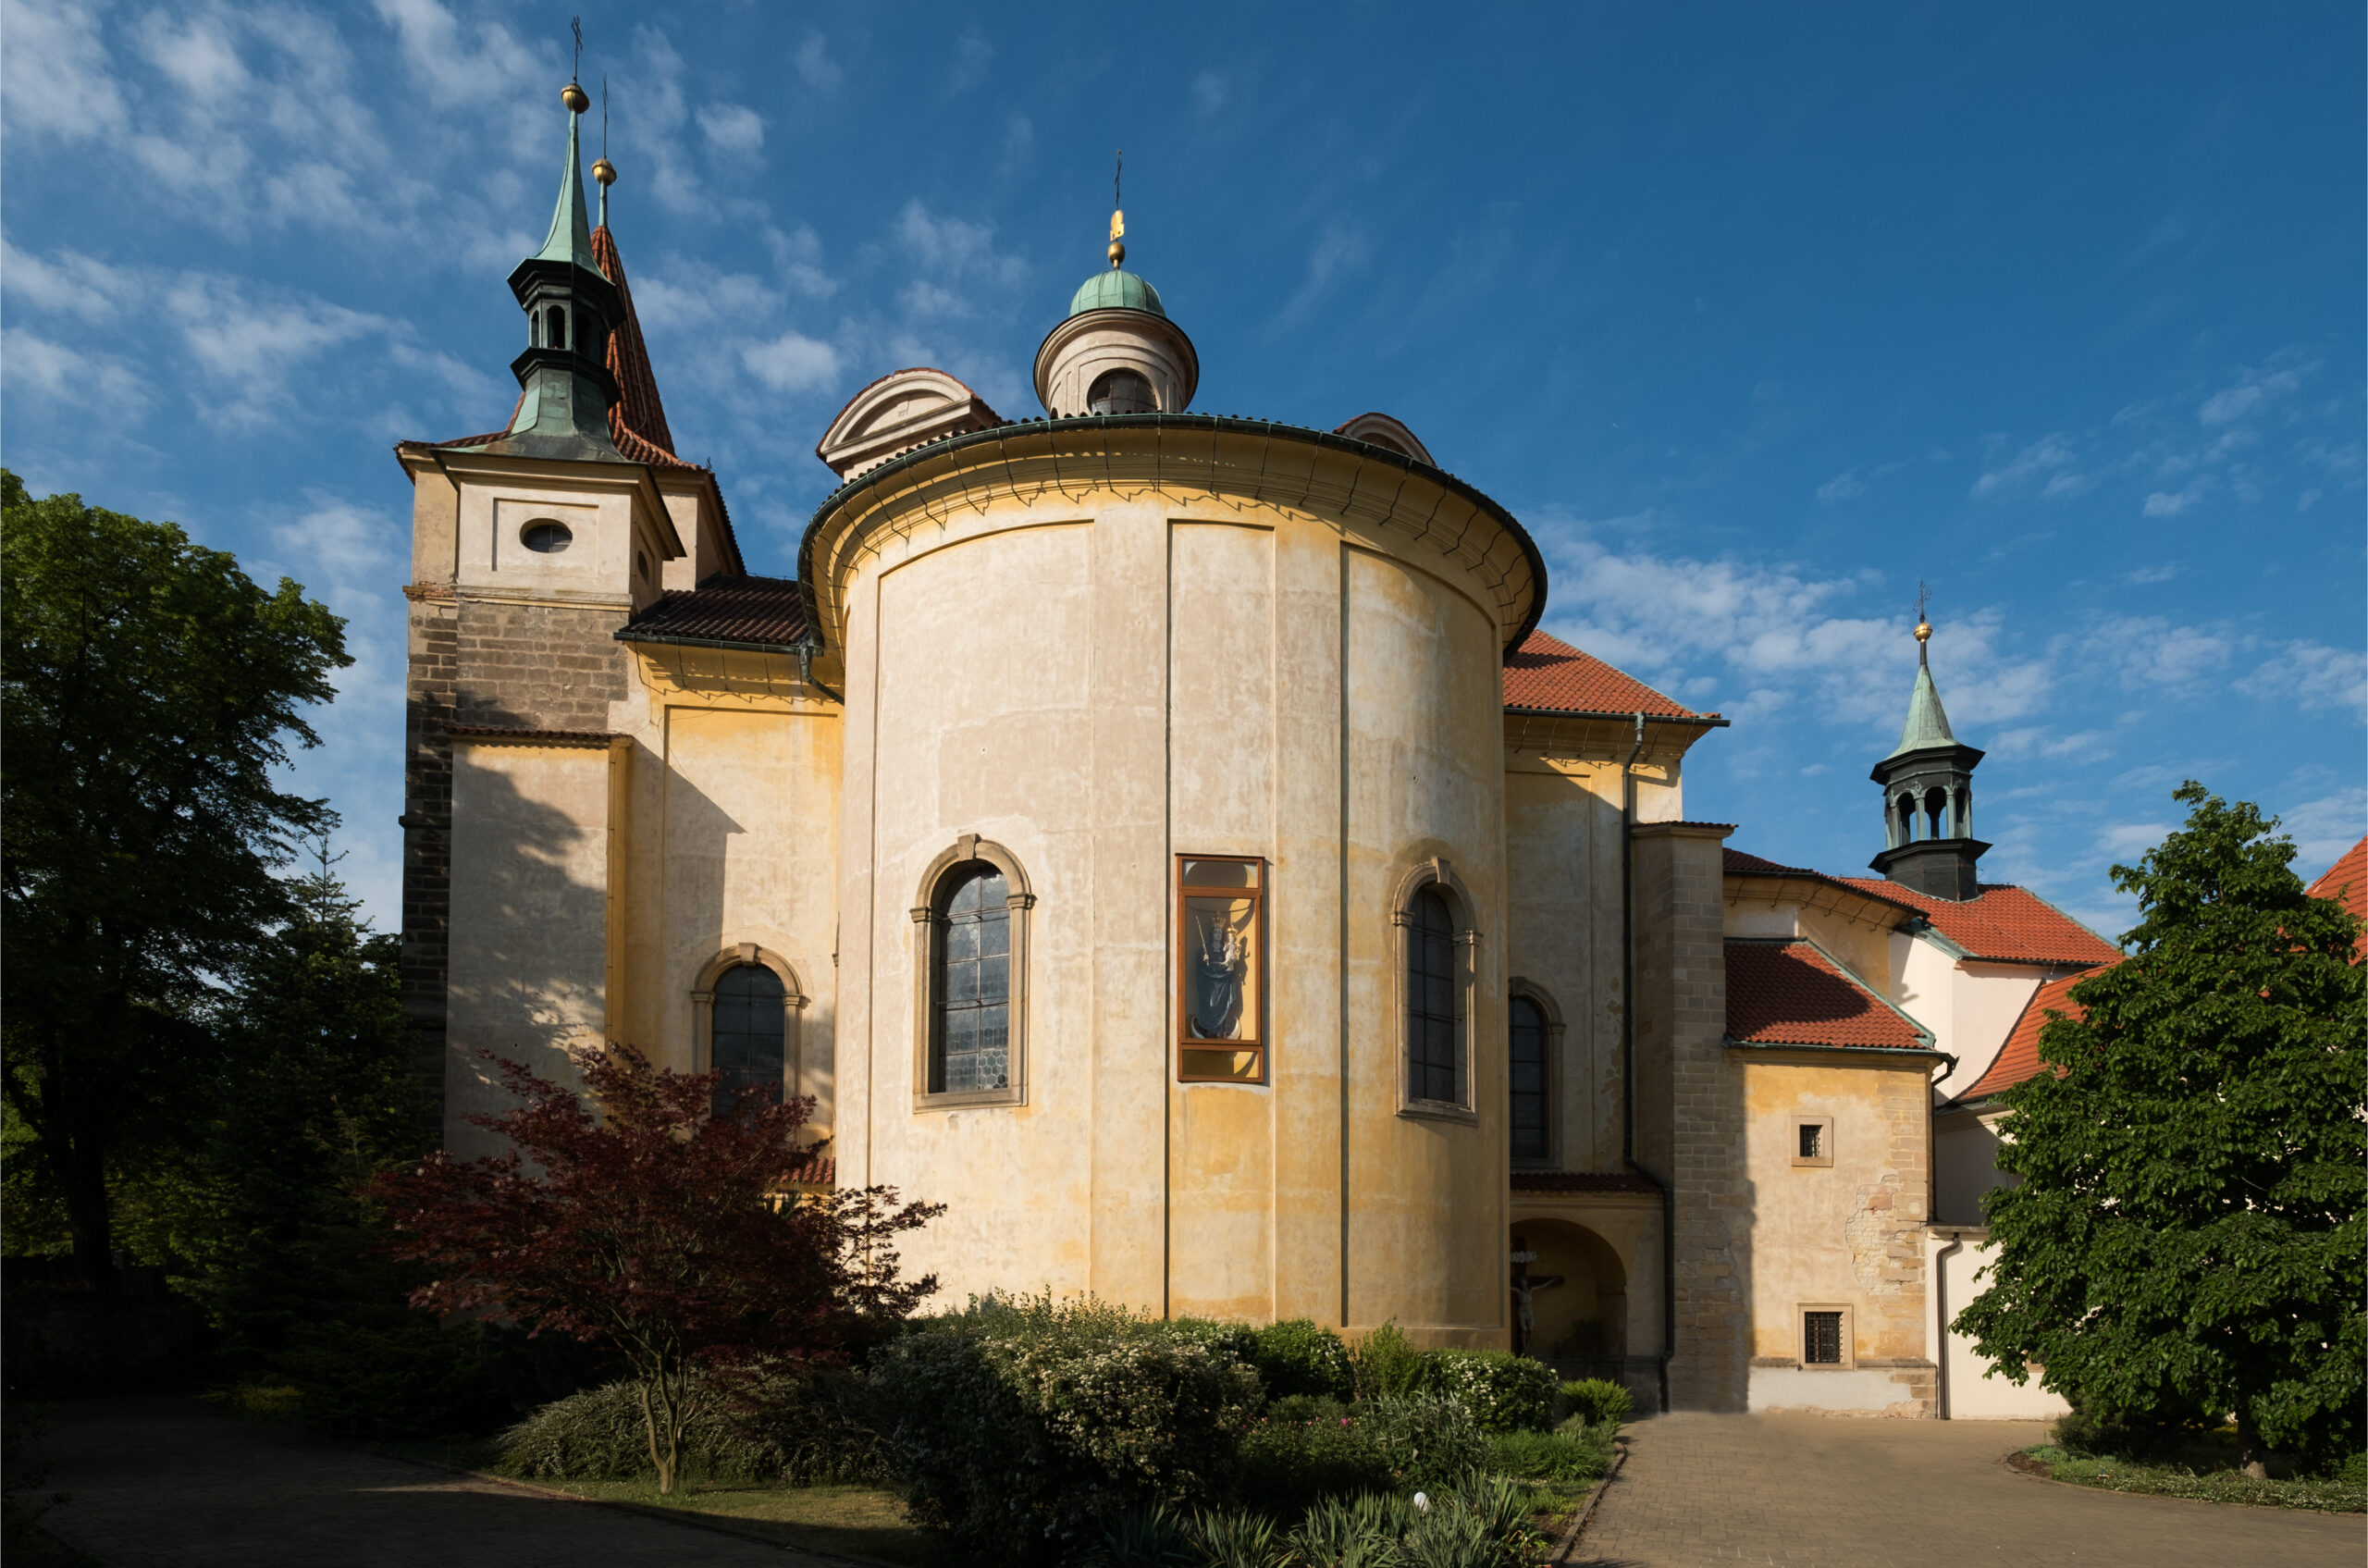 Pohled na kostel s klášterem od vstupní brány